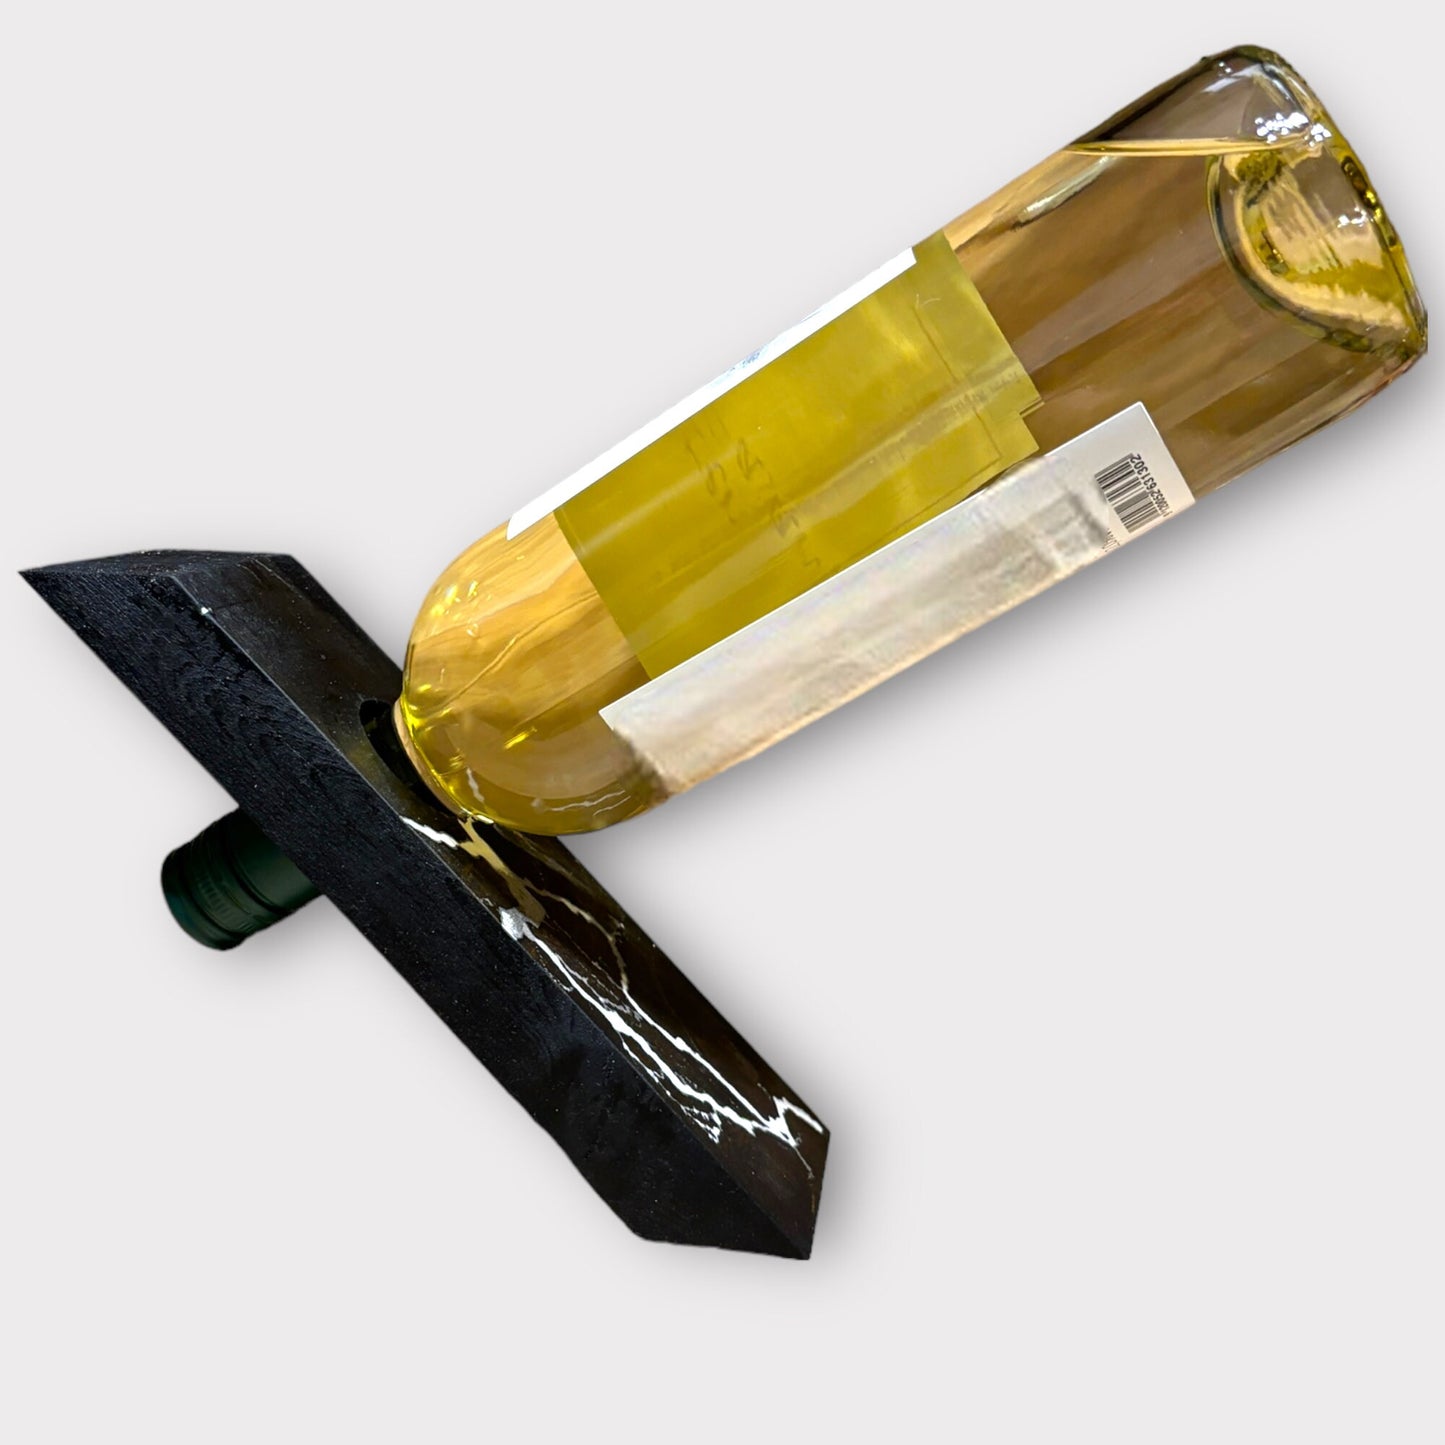 Holz-Epoxy Weinflaschenhalter – Lichtenberg Kunst, Unikat Geschenk Weinständer, magischer Flaschenhalter, fractal wood burn Weihnachten